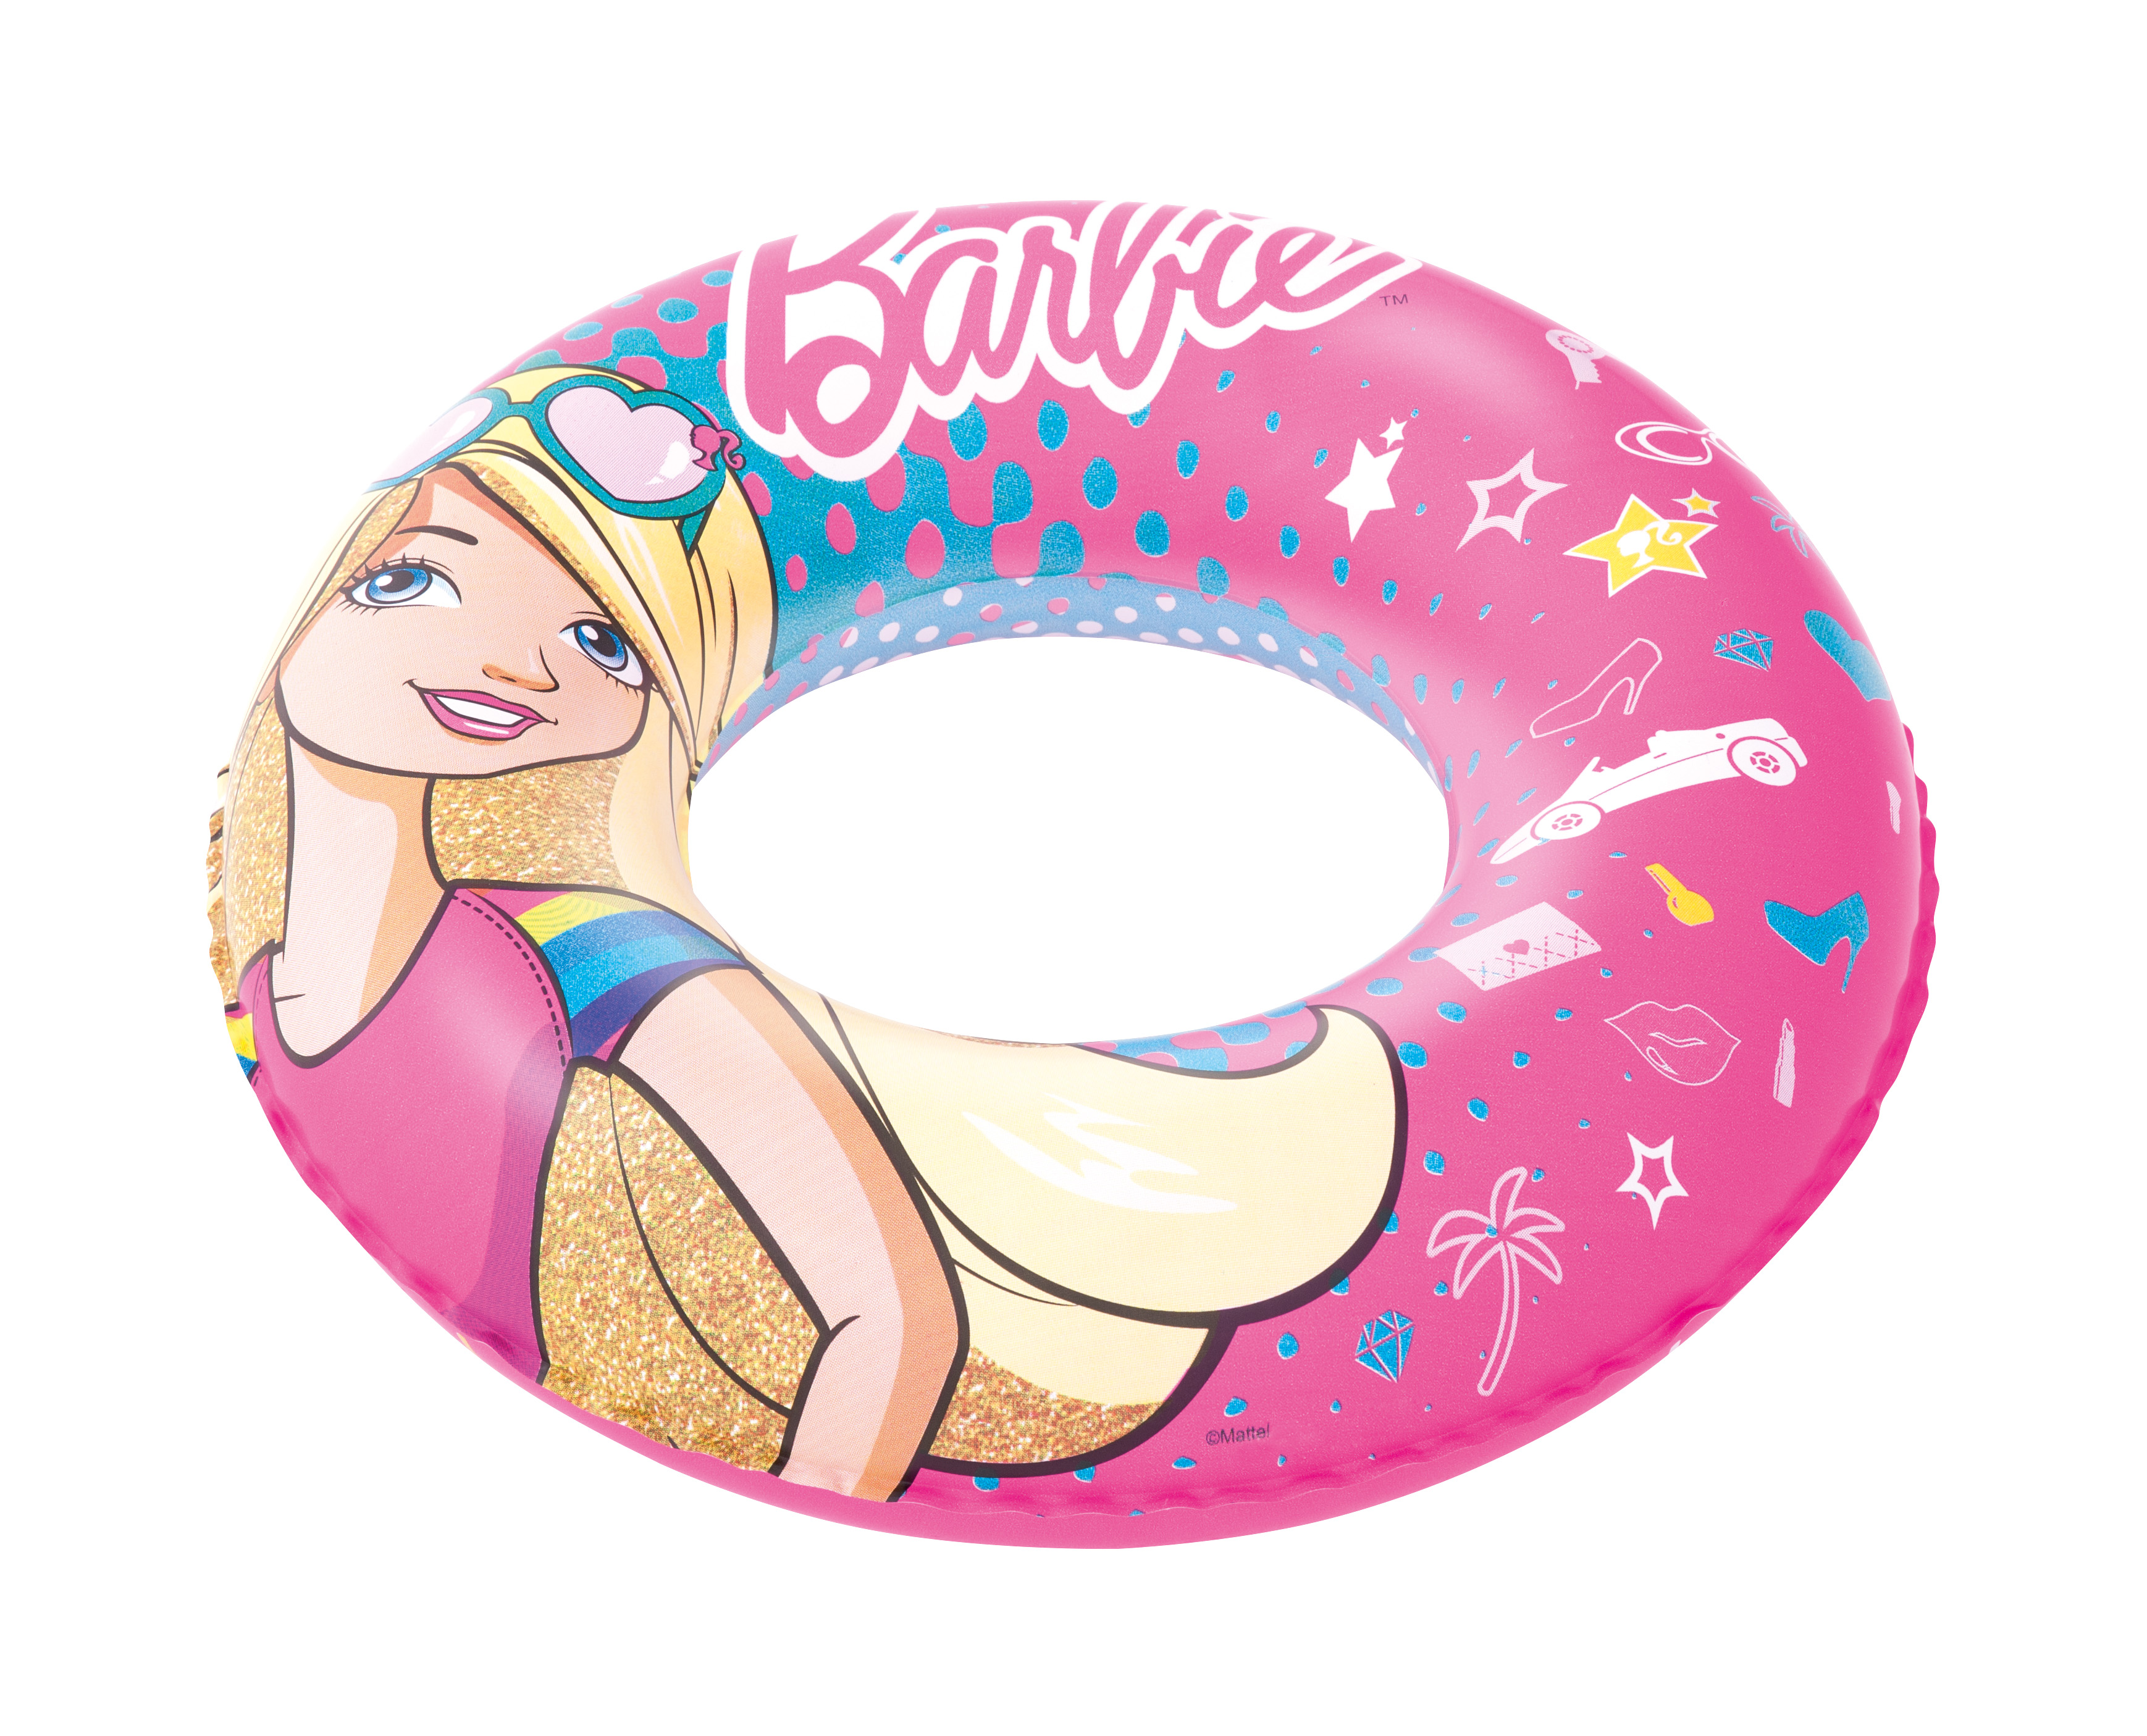 Круг улитка. Круг для плавания Bestway Barbie 93202 BW. Bestway круг для плавания 56см Барби. Круг надувной для плавания 56см Disney Princess, 91043b Bestway. Надувной круг Bestway 92005.